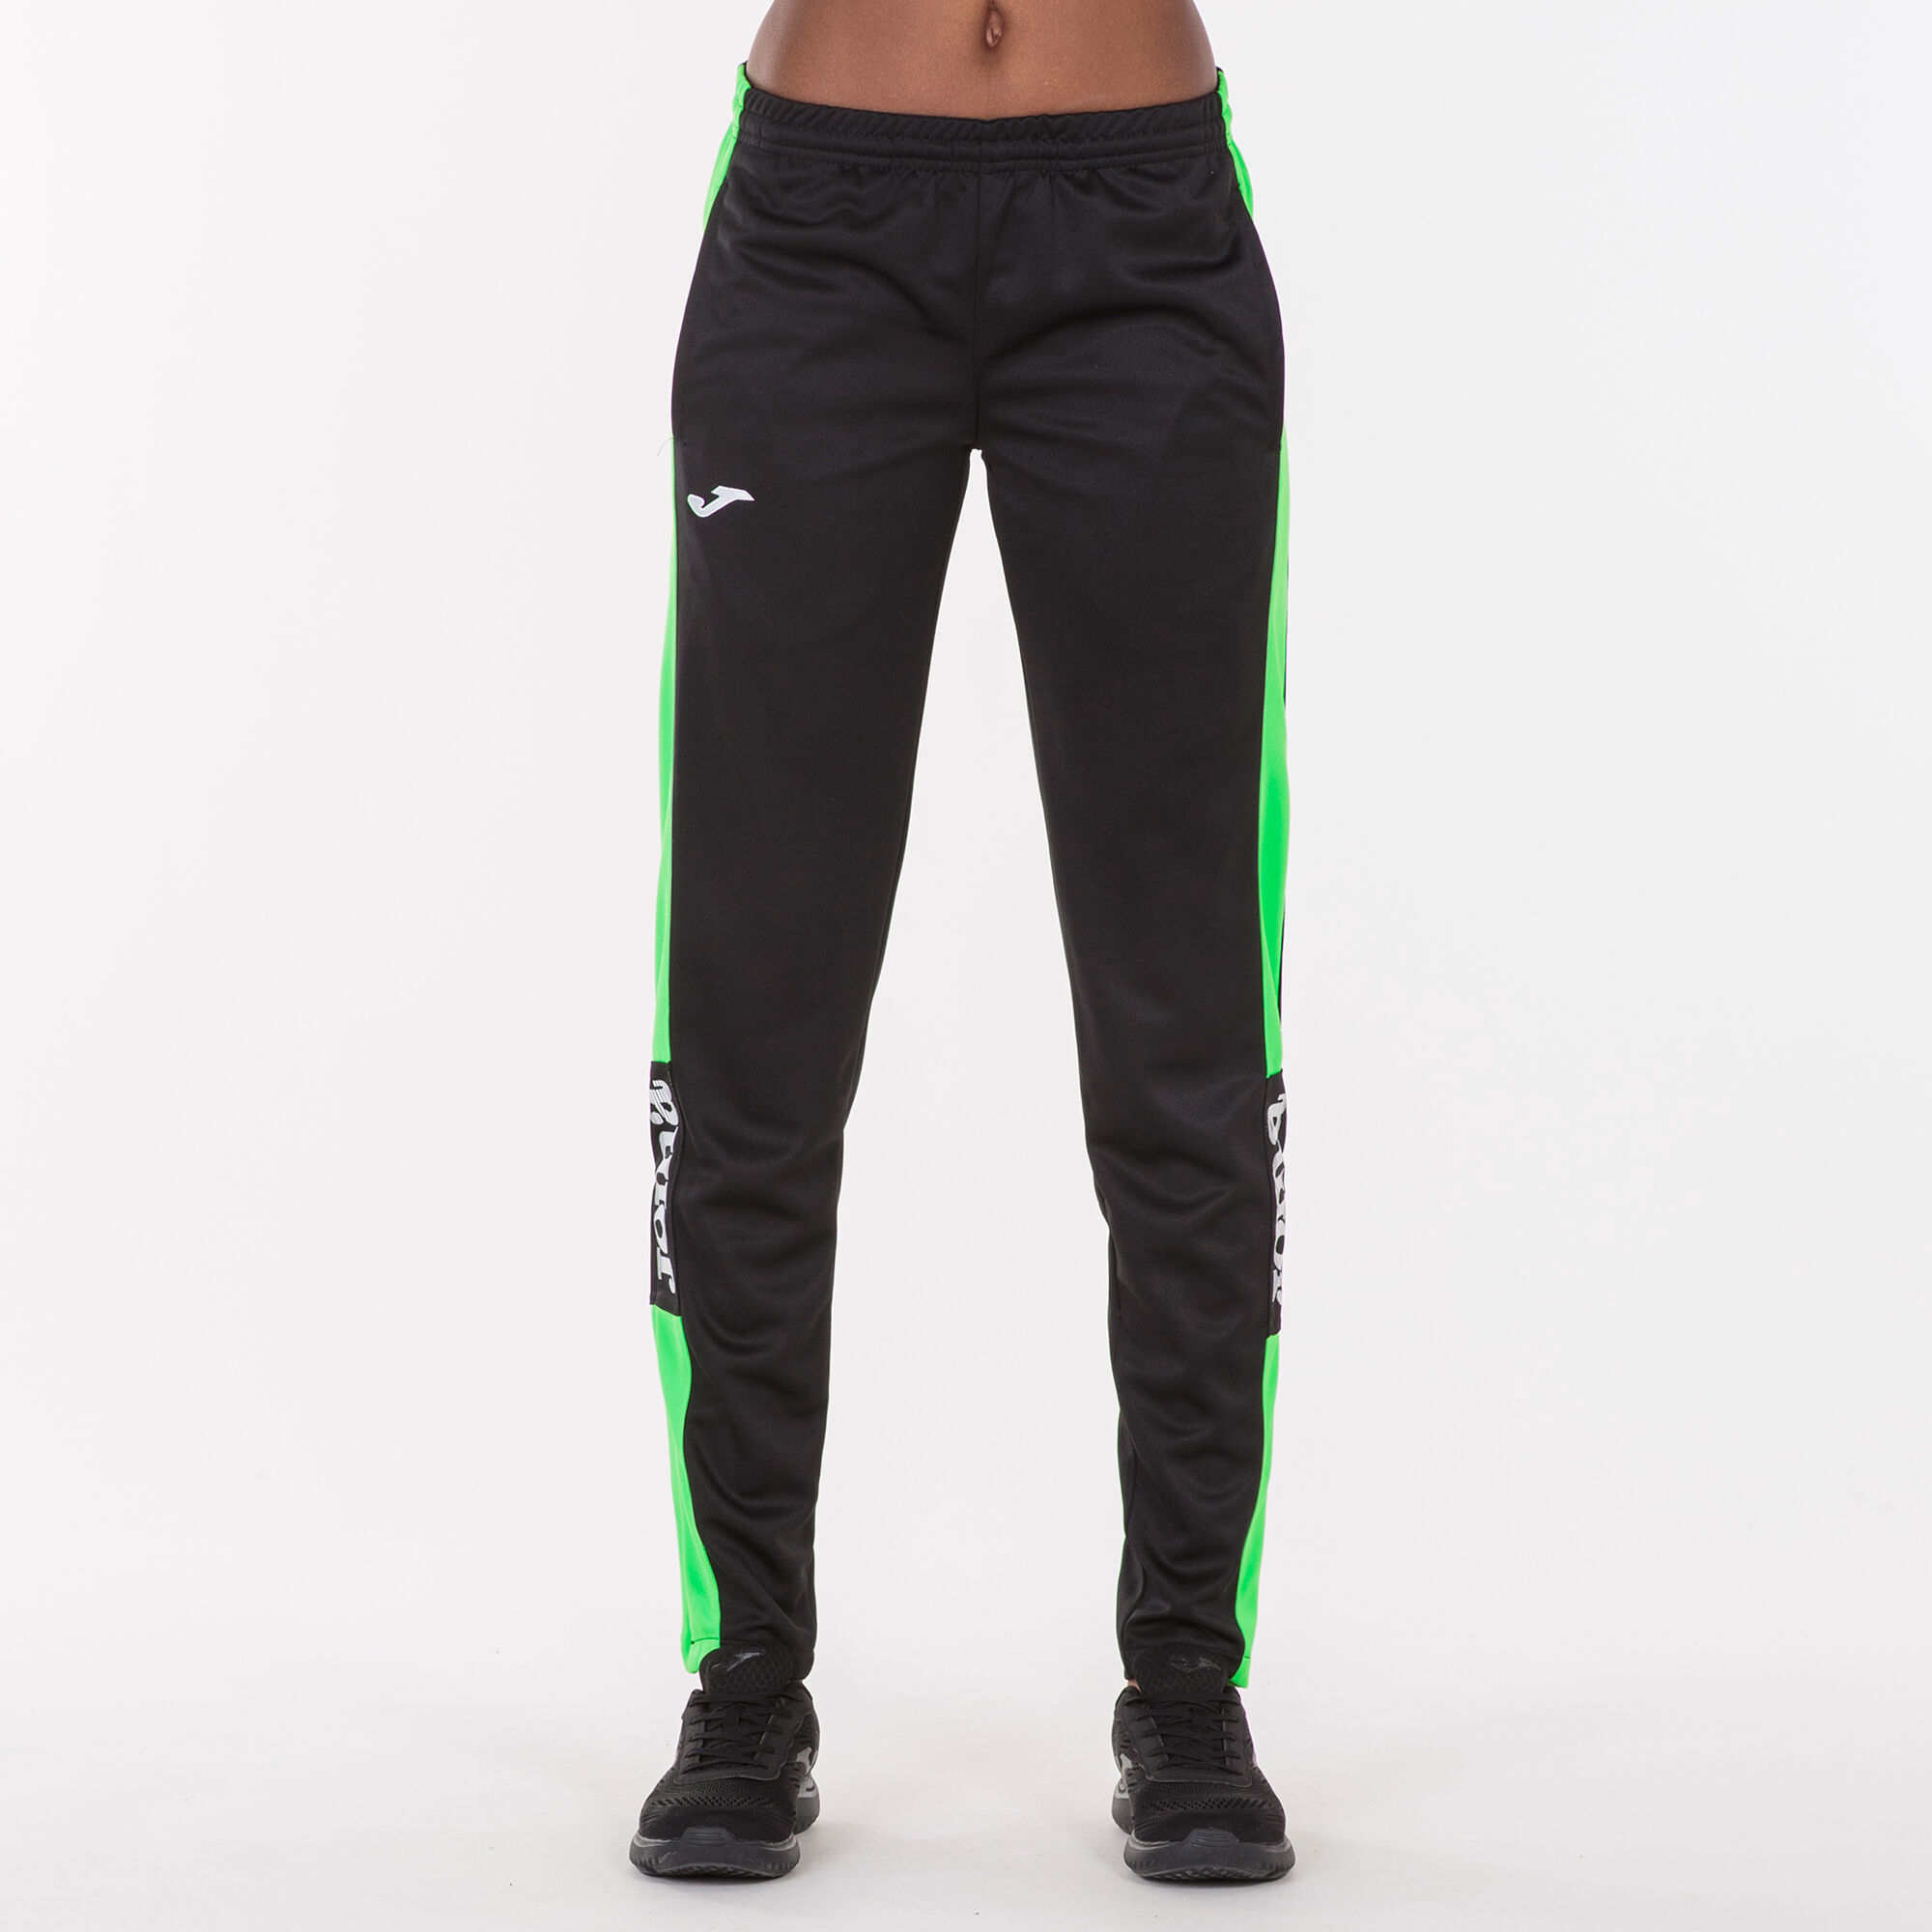 Pantalone lungo donna Championship IV nero verde fluorescente